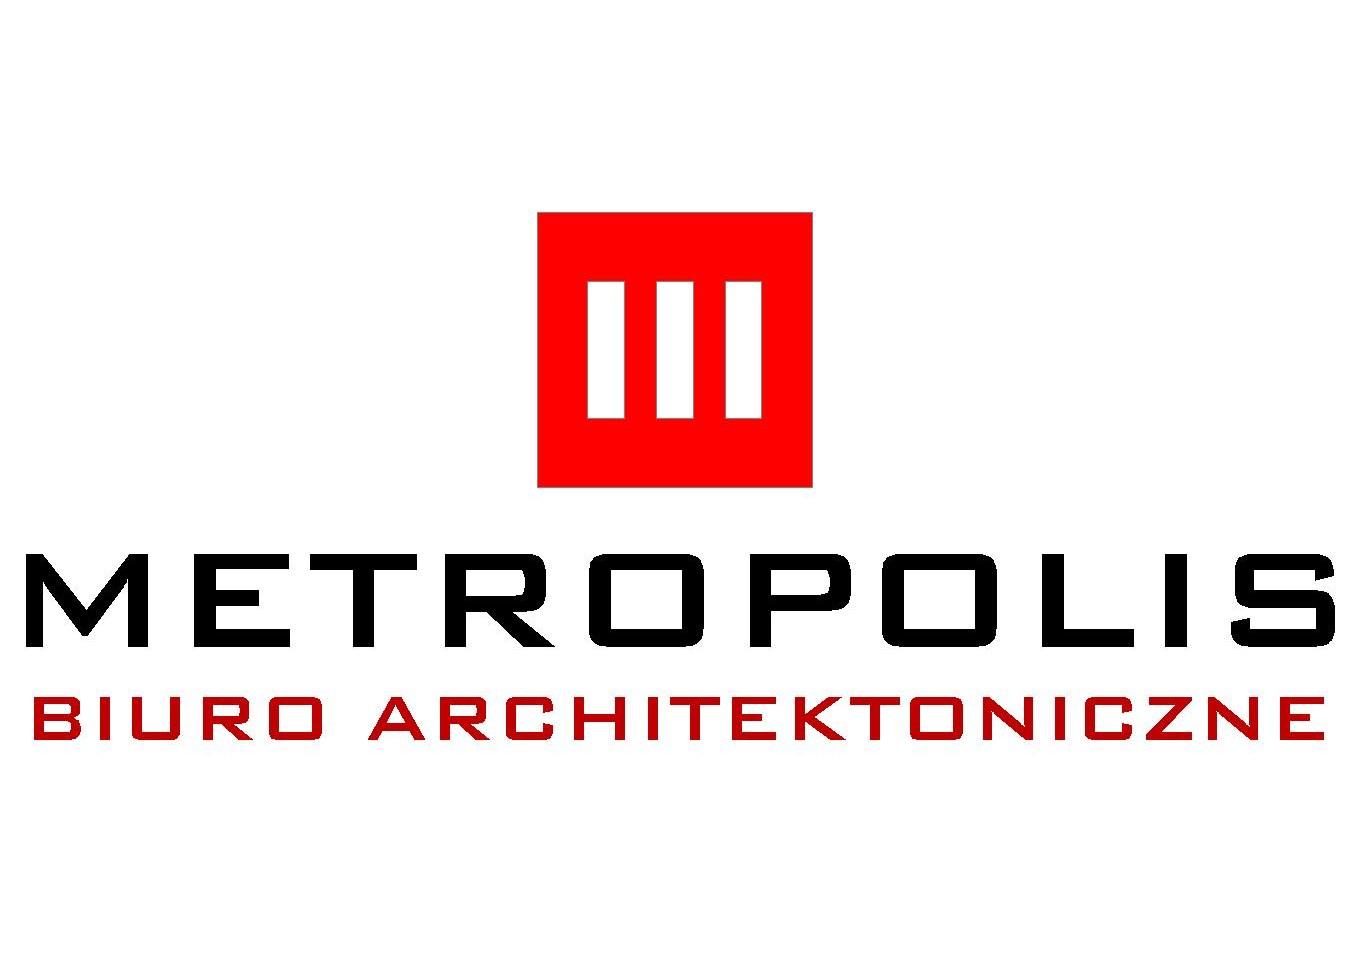 biuro architektoniczne METROPOLIS